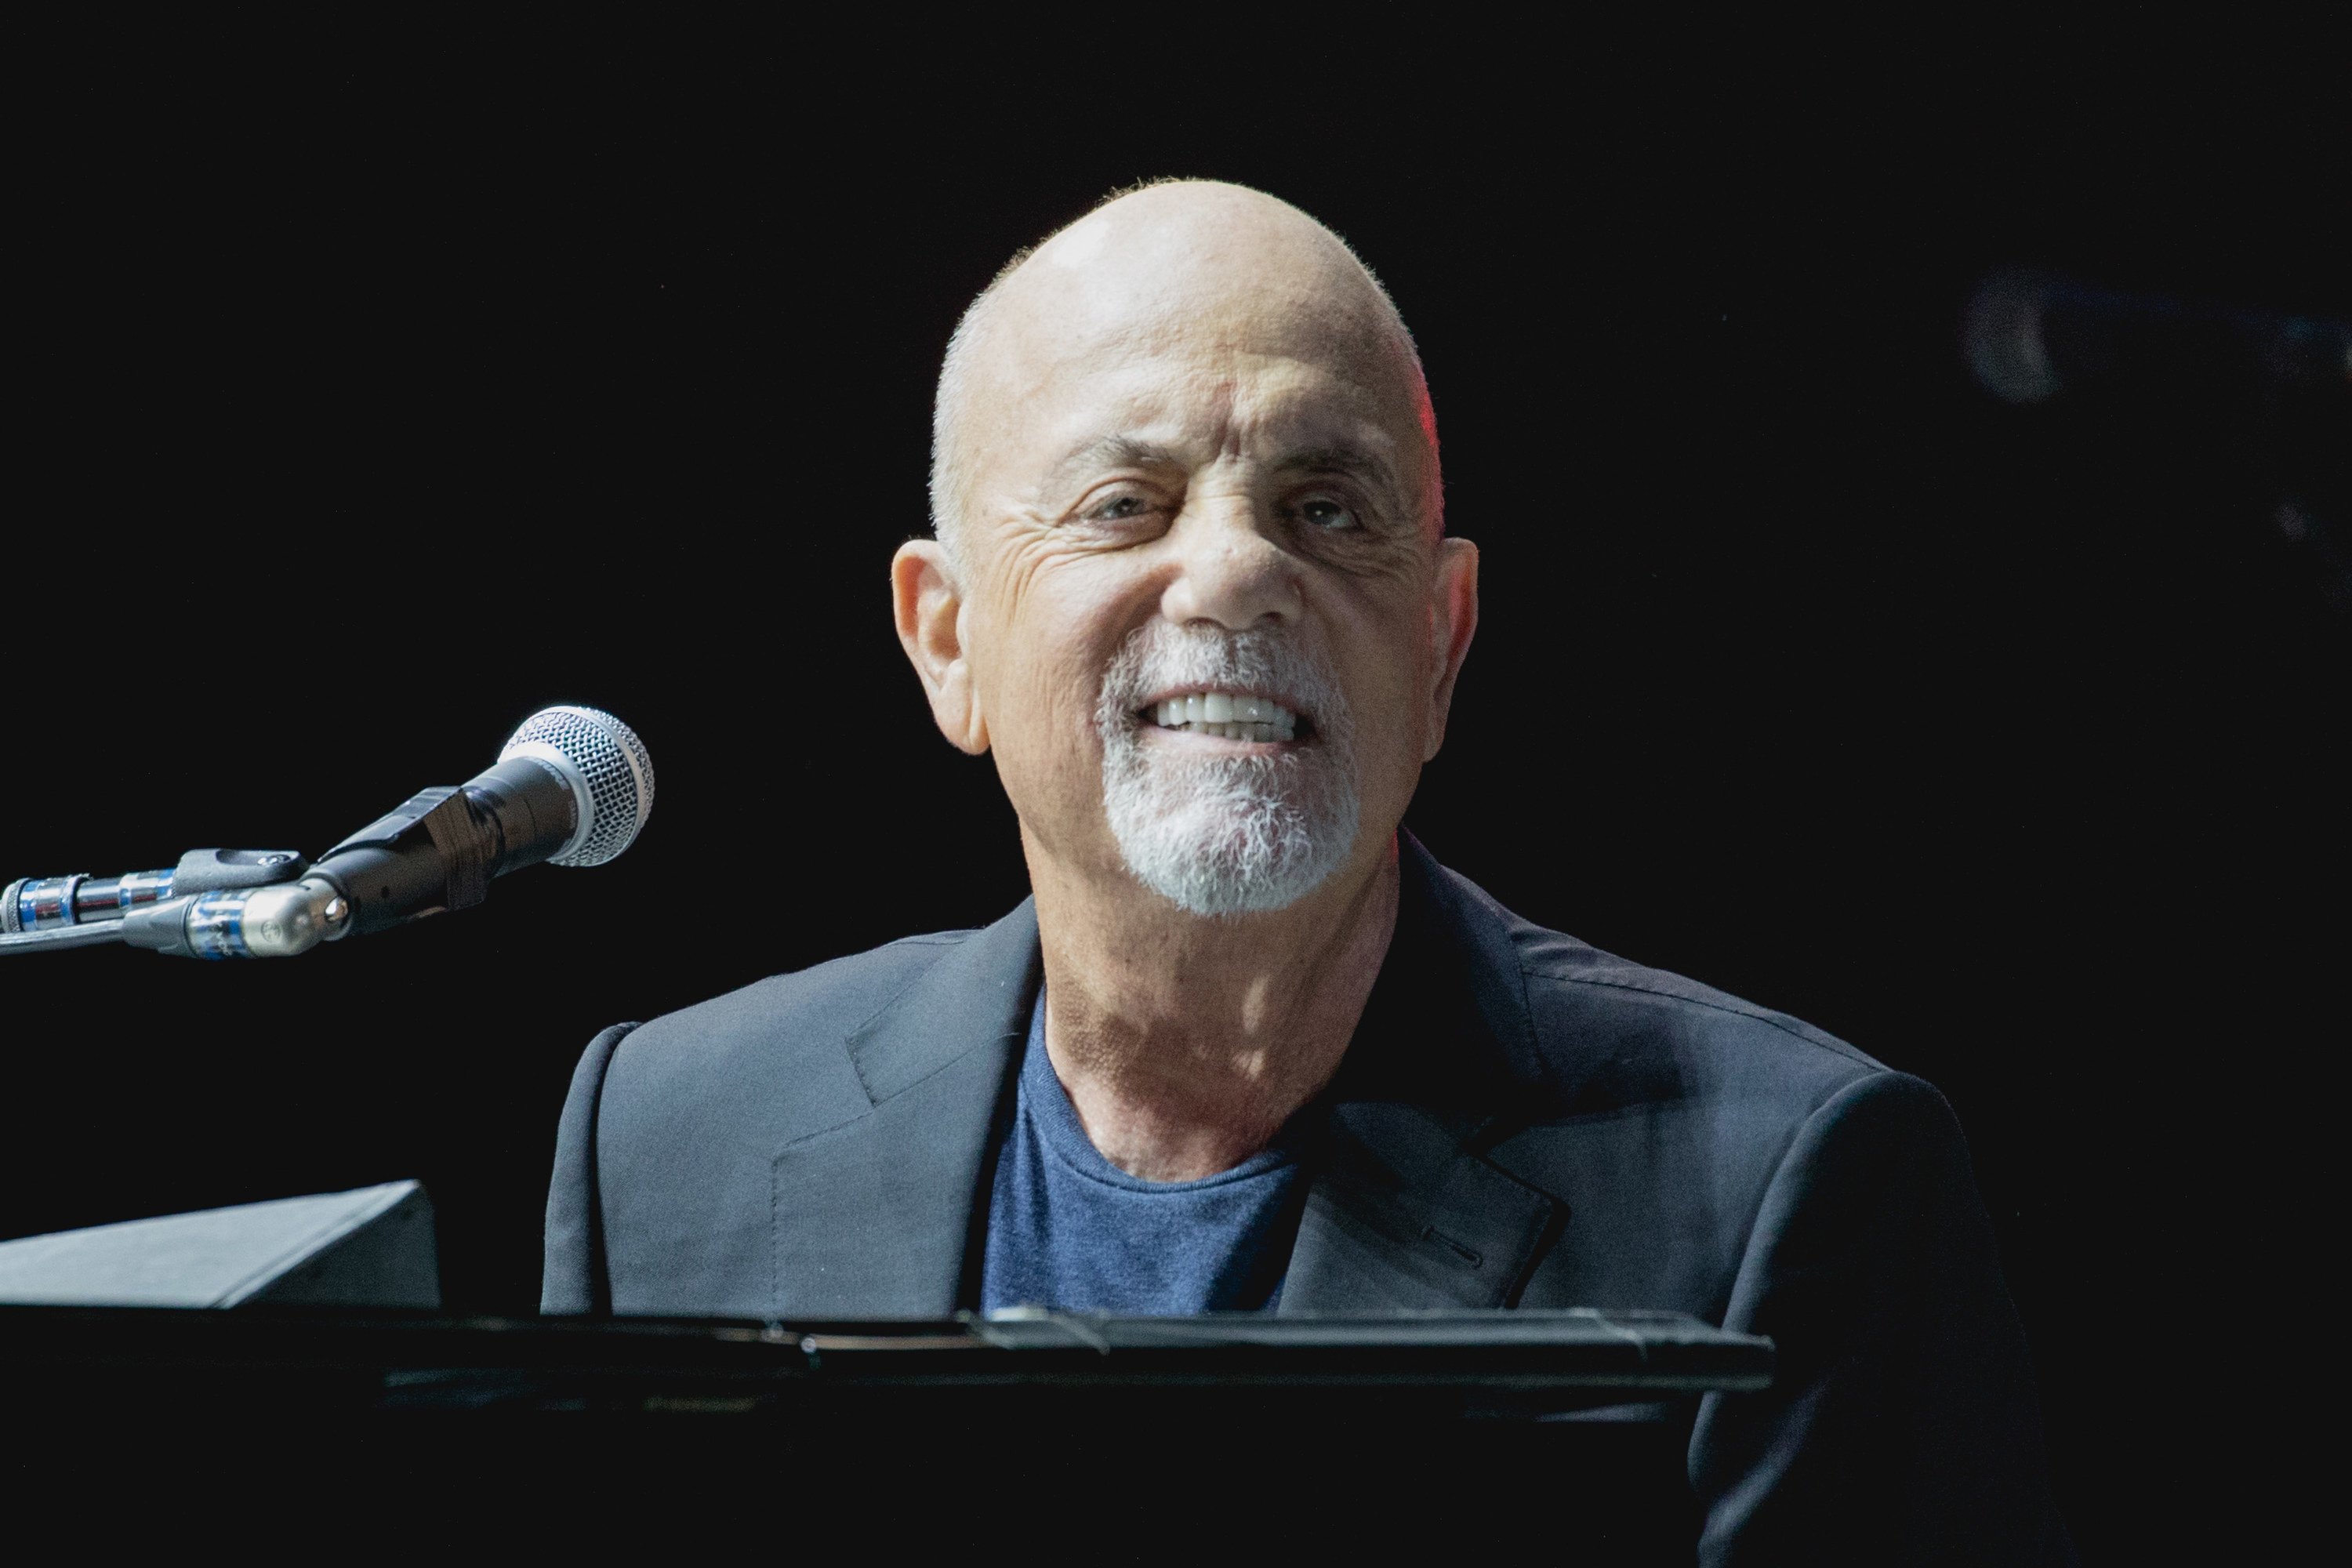 Billy Joel onstage